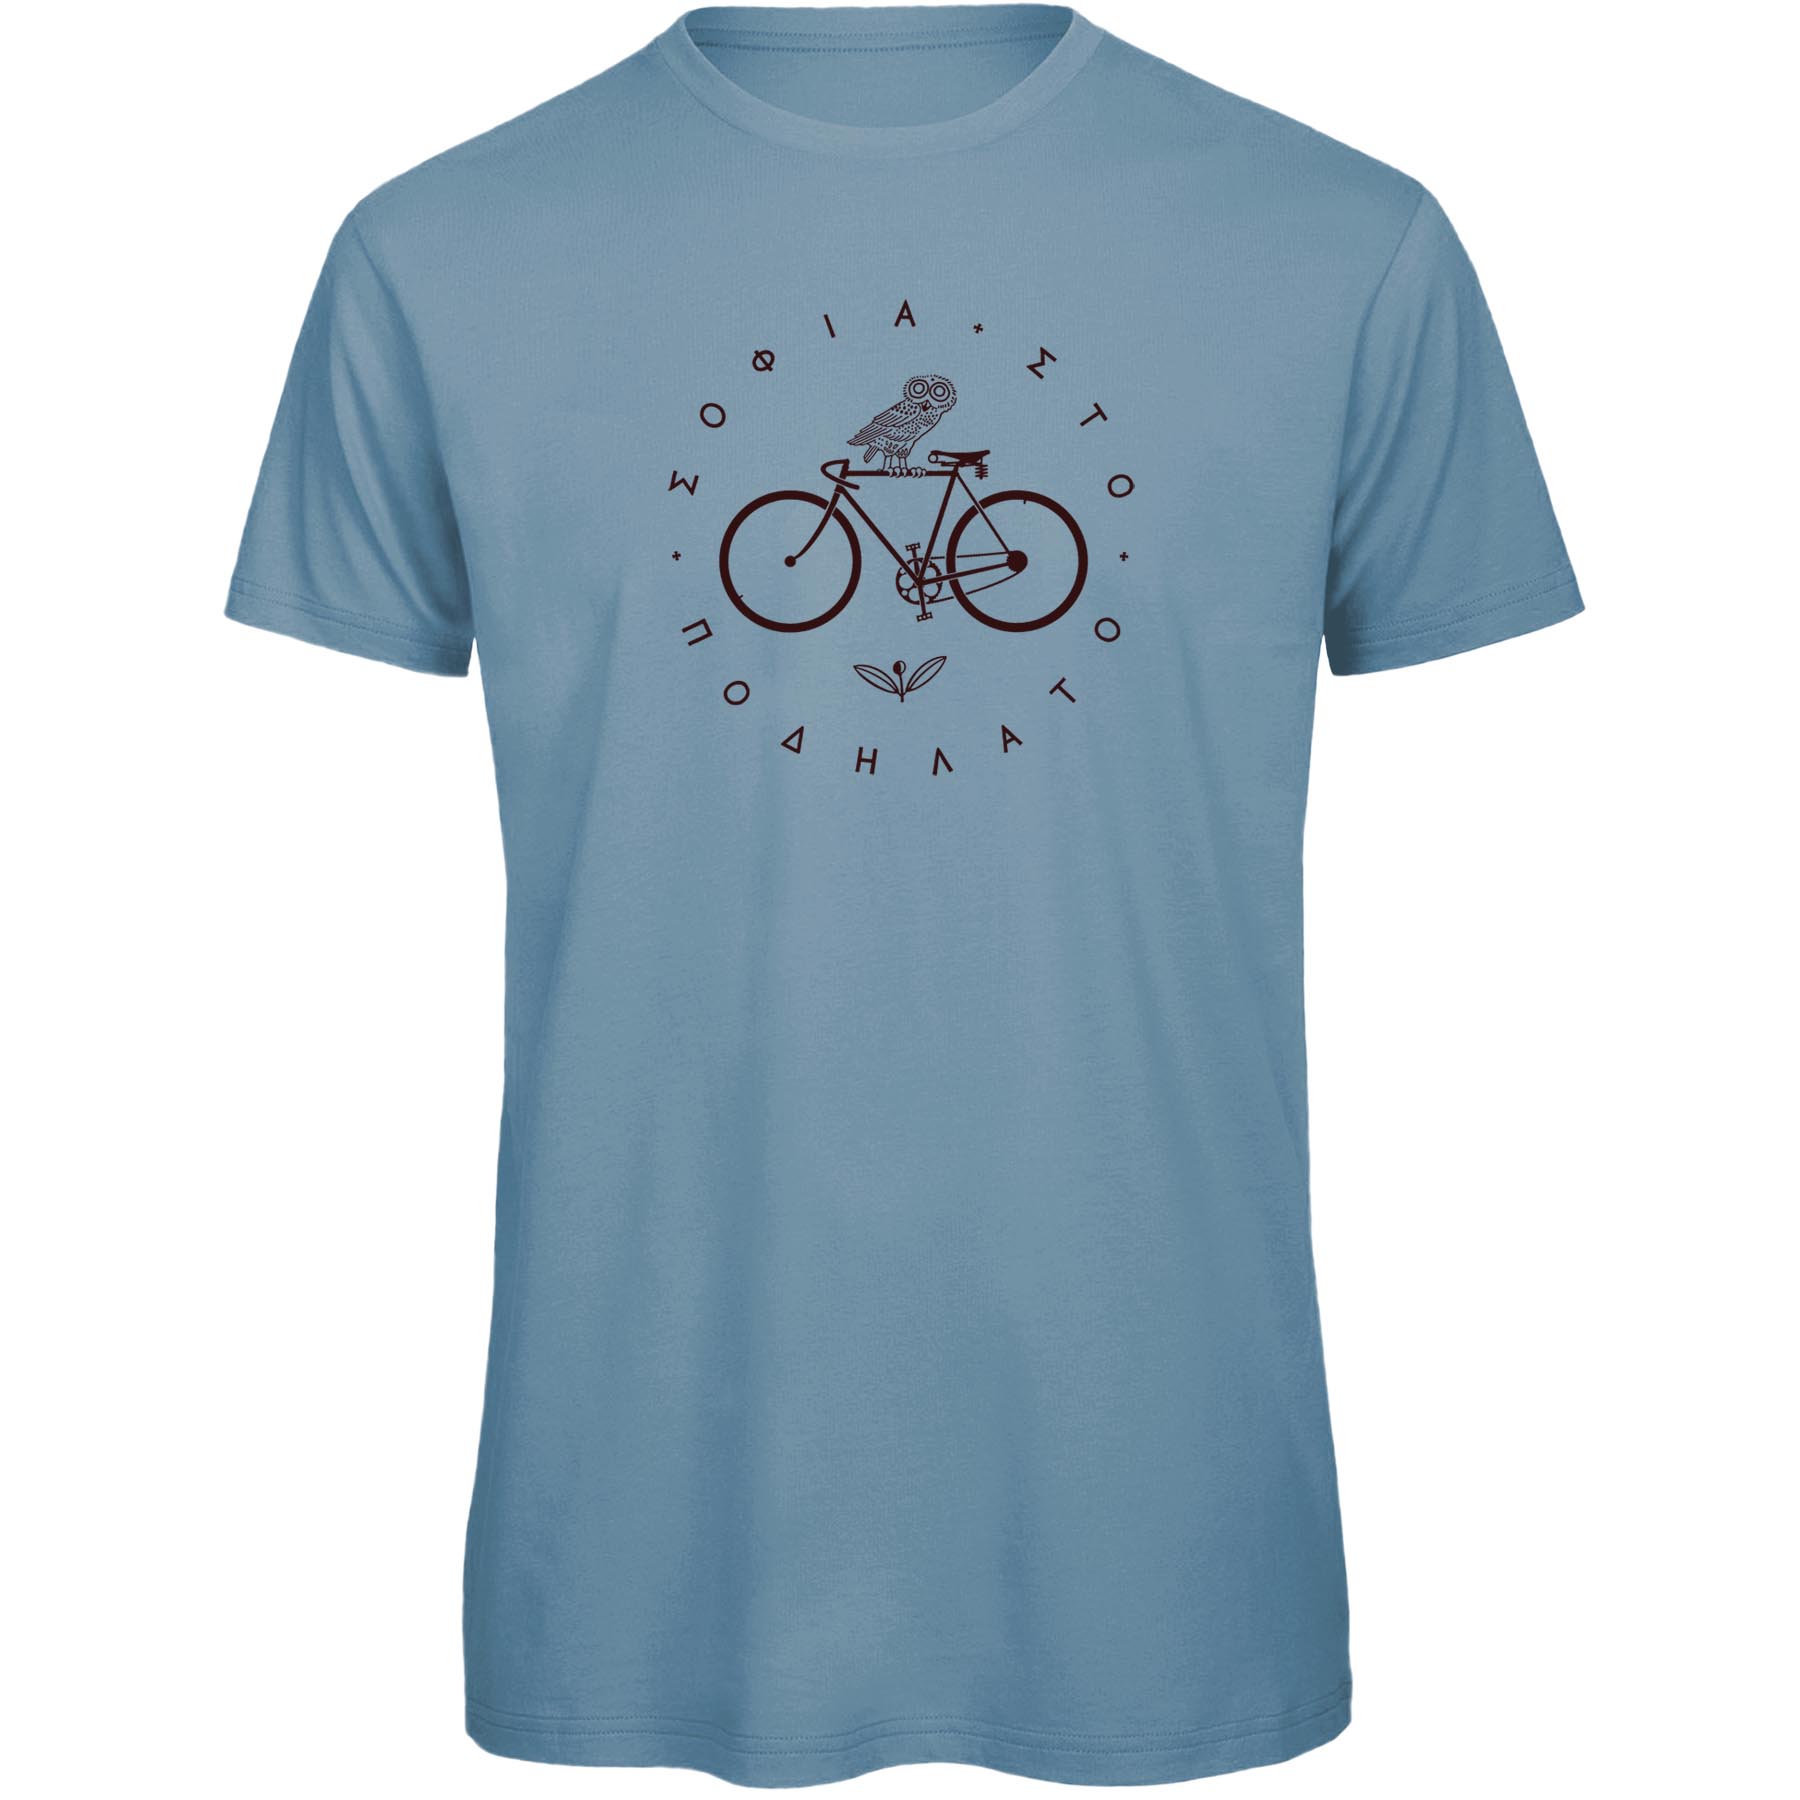 Produktbild von RTTshirts Minerva Fahrrad T-Shirt Herren - hellblau